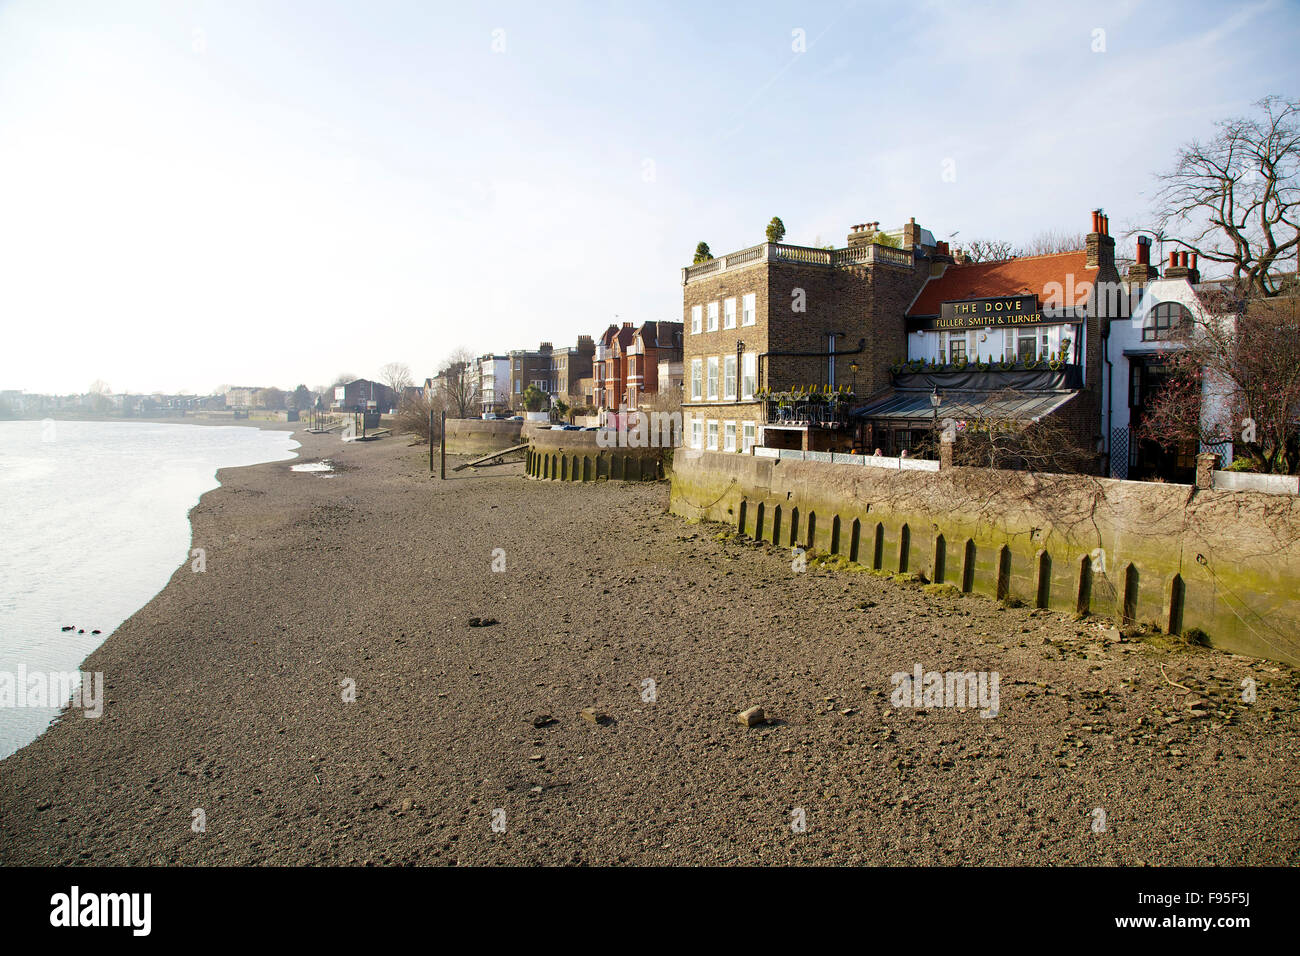 Hammersmith, London. Blick auf einen Sandstrand entlang der Themse. Traditionelle Häuser in Sicht. Stockfoto